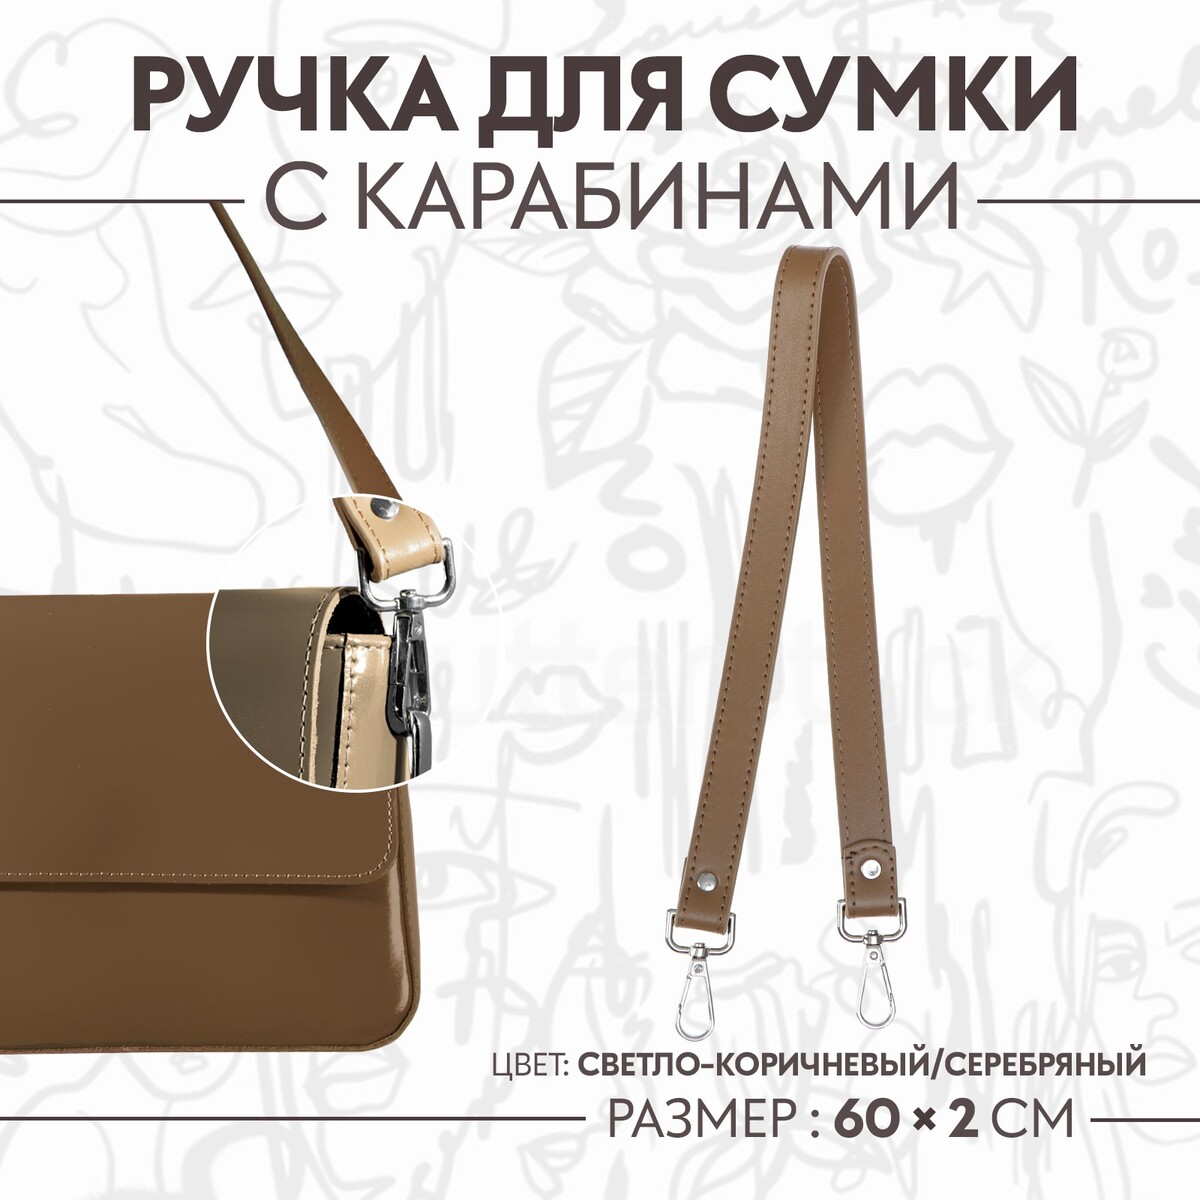 Ручка для сумки, с карабинами, 60 × 2 см, цвет светло-коричневый ручка для сумки с карабинами 60 × 2 см